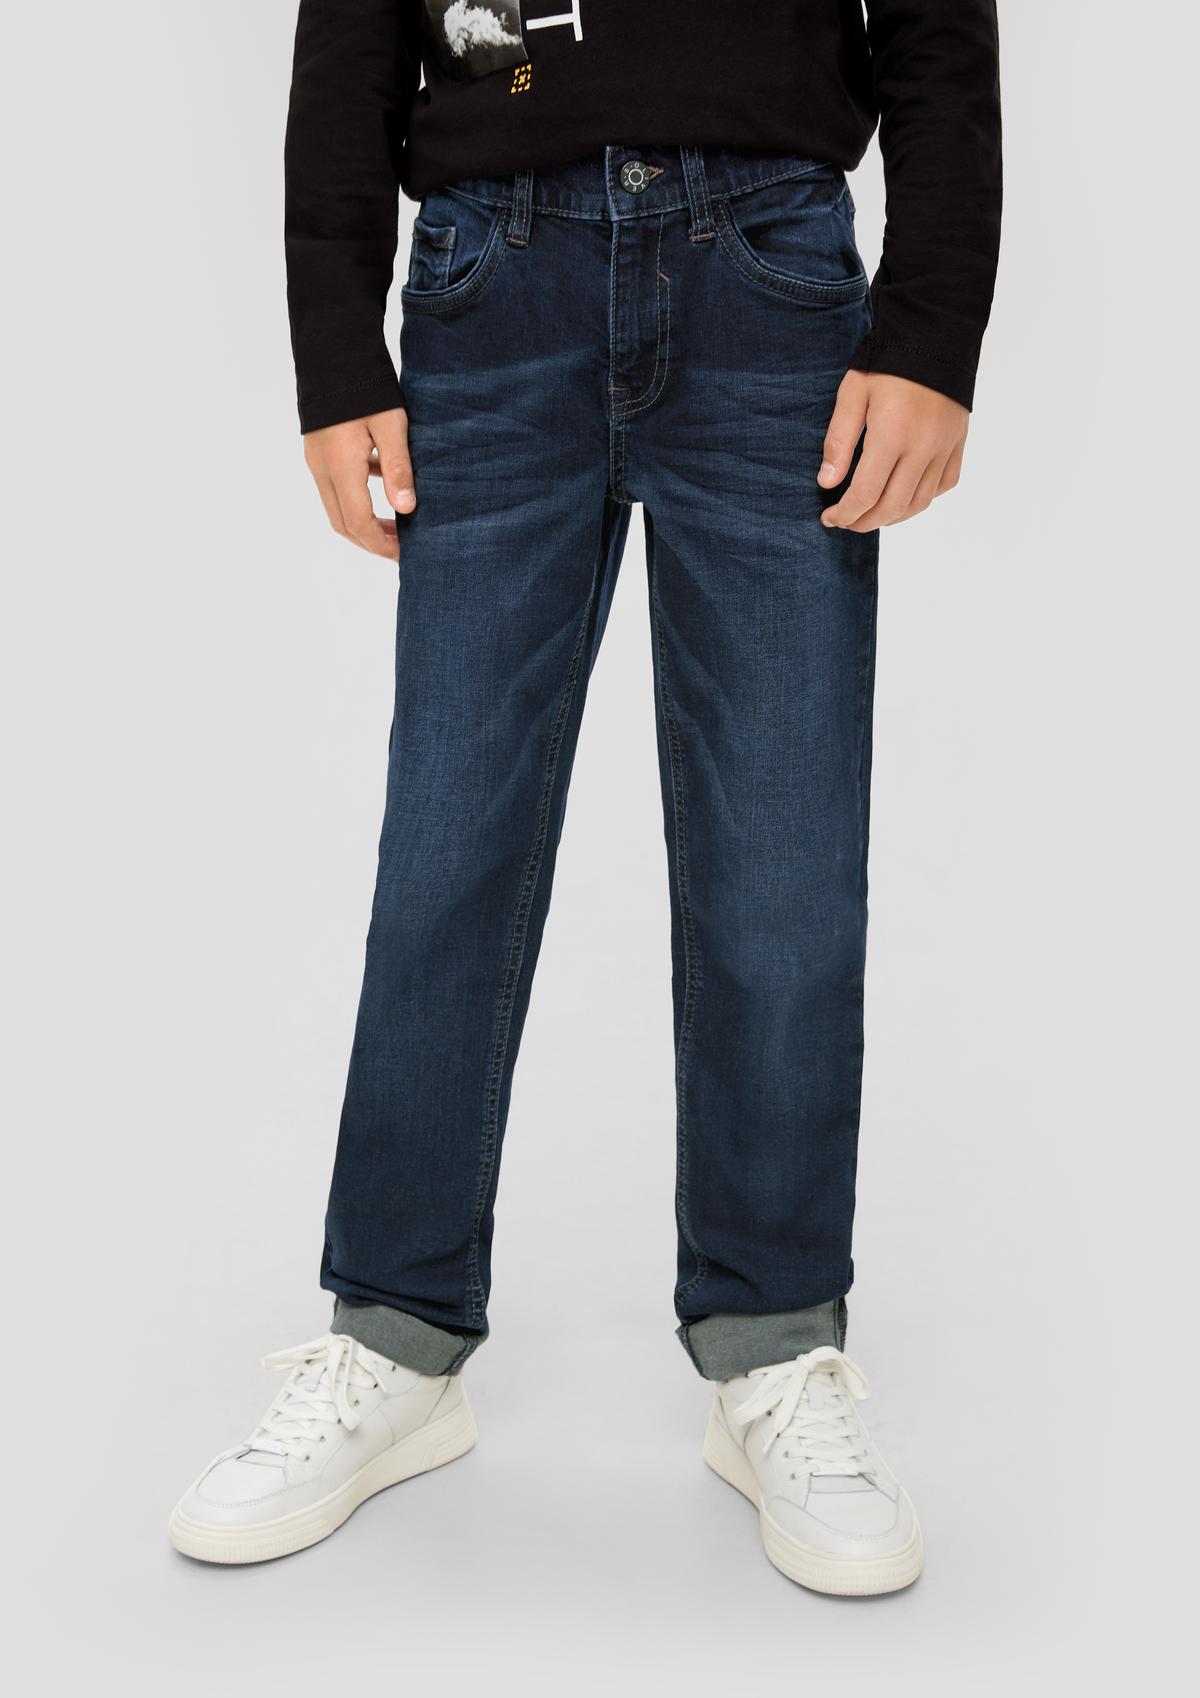 Regular: džíny s obnošeným vzhledem